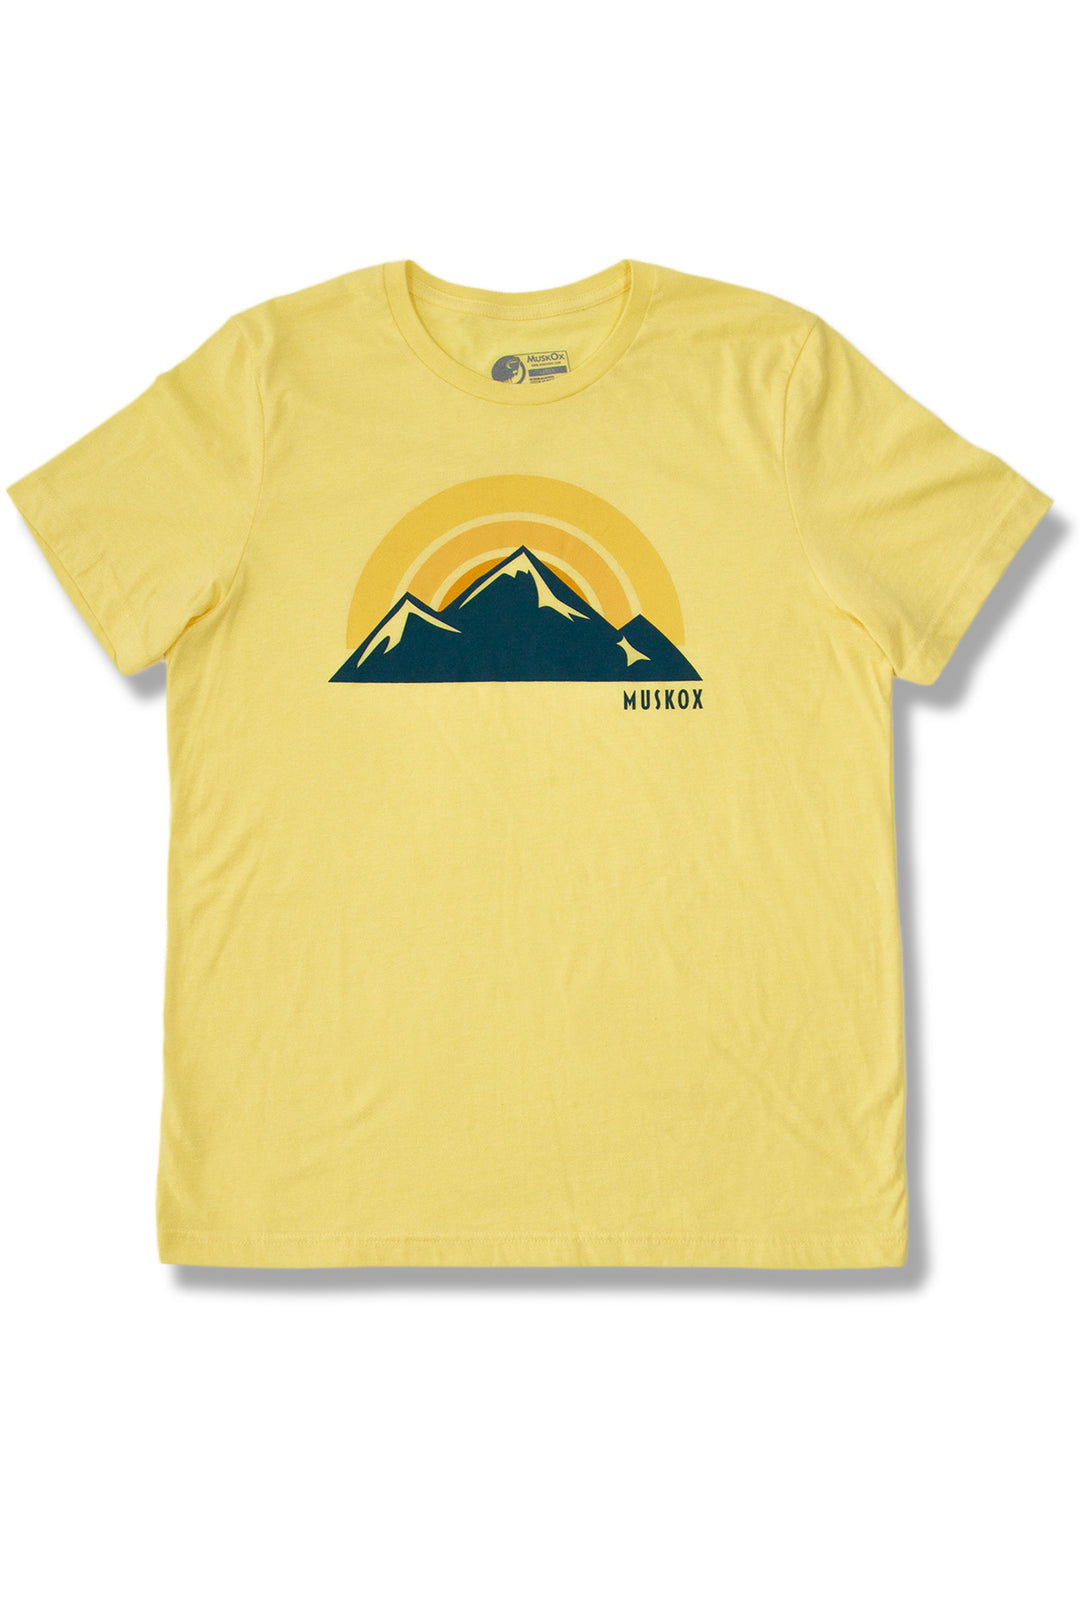 MuskOx Outdoor Apparel Midnight Mountain Tee Shirt